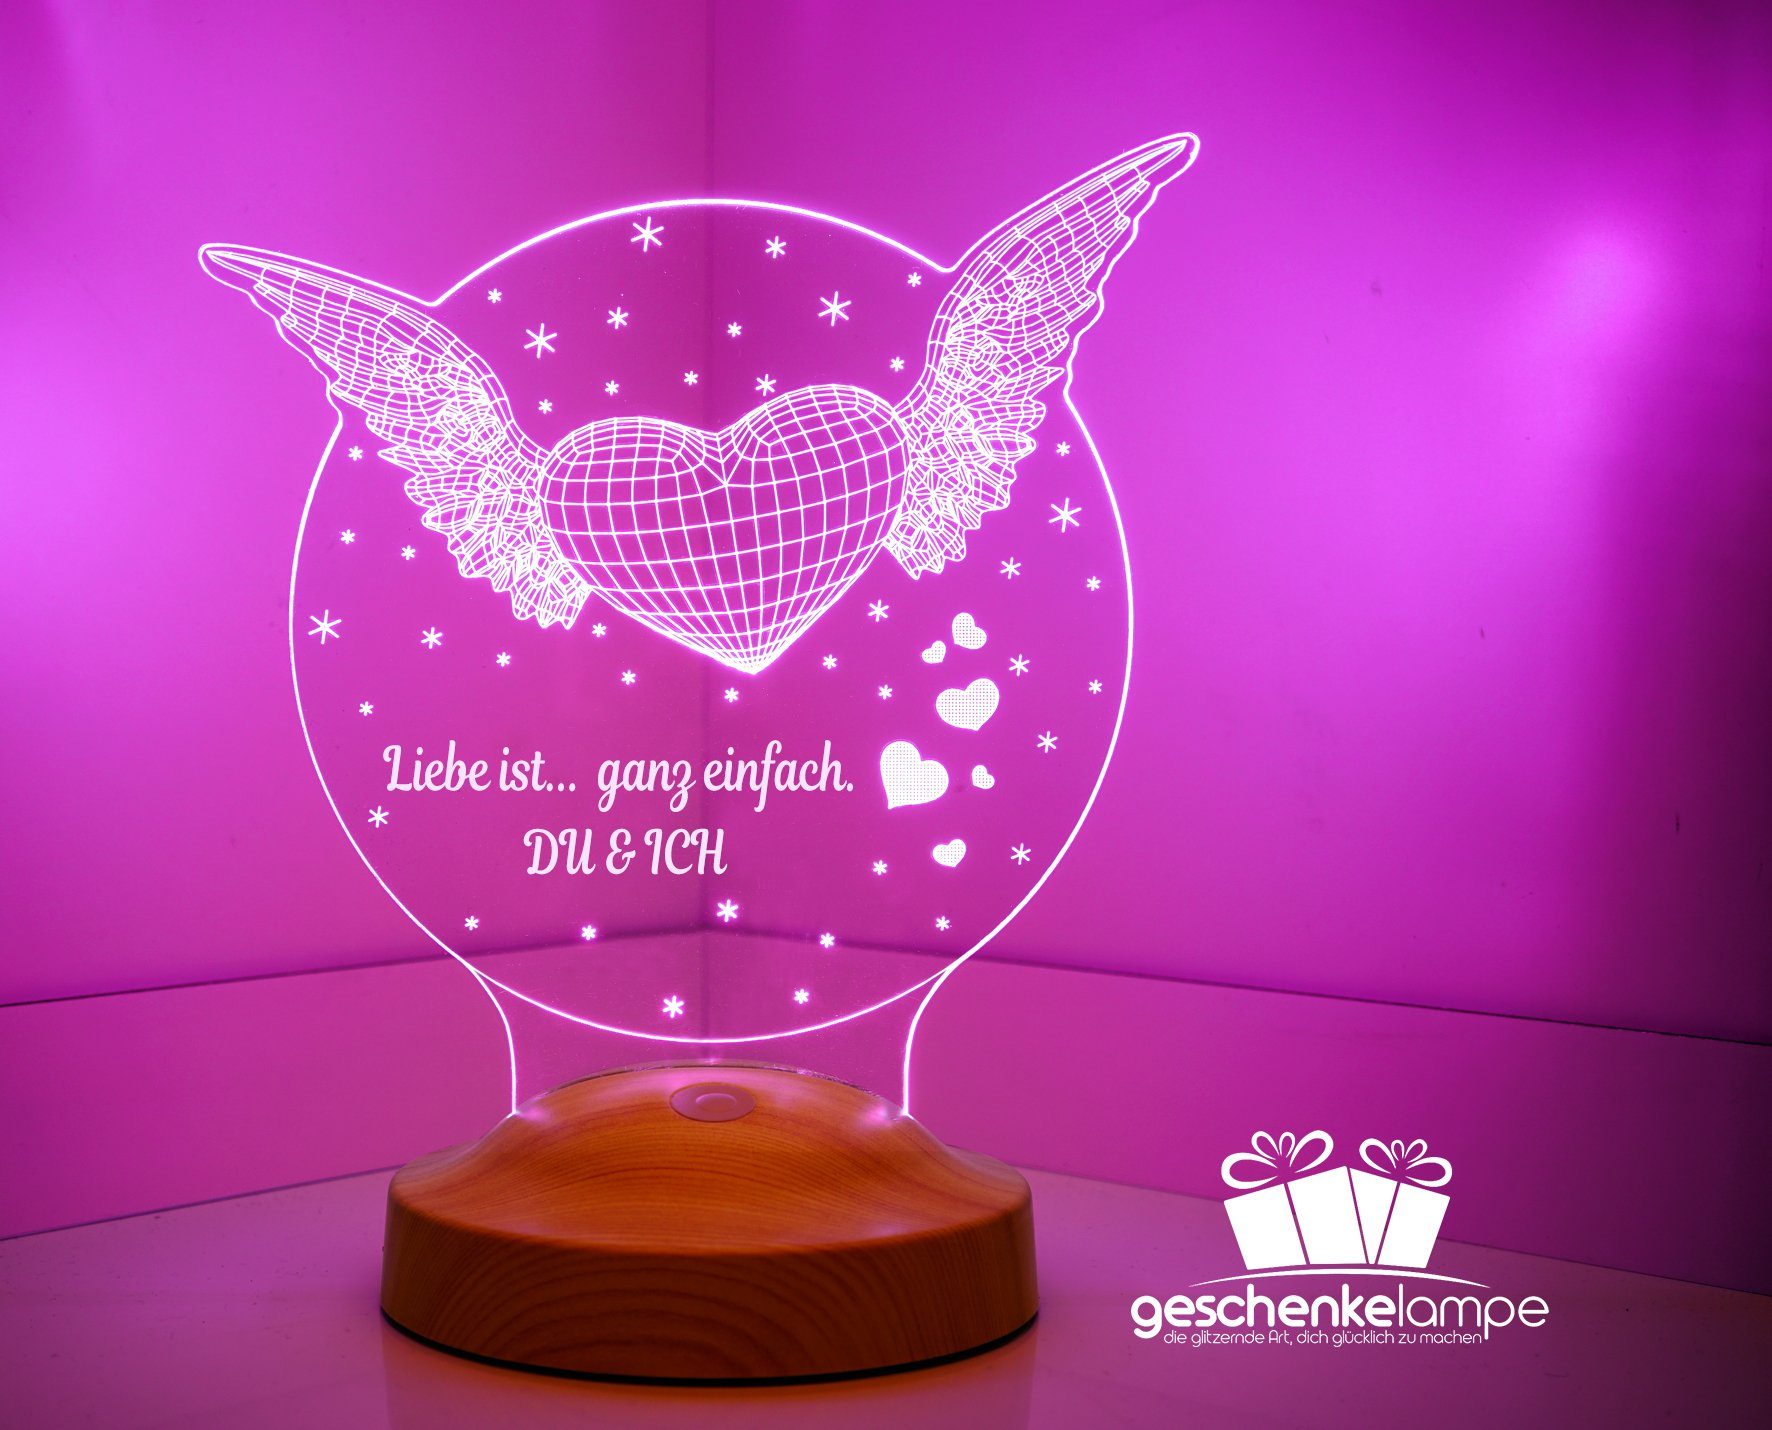 Geschenkelampe Nachttischlampe Fliegendes Herz 3D mehrfarbige Nachtlicht Hochzeitsgeschenk, Leuchte 7 Farben fest integriert, Geschenk für Ehefrau, Partner, Freundin